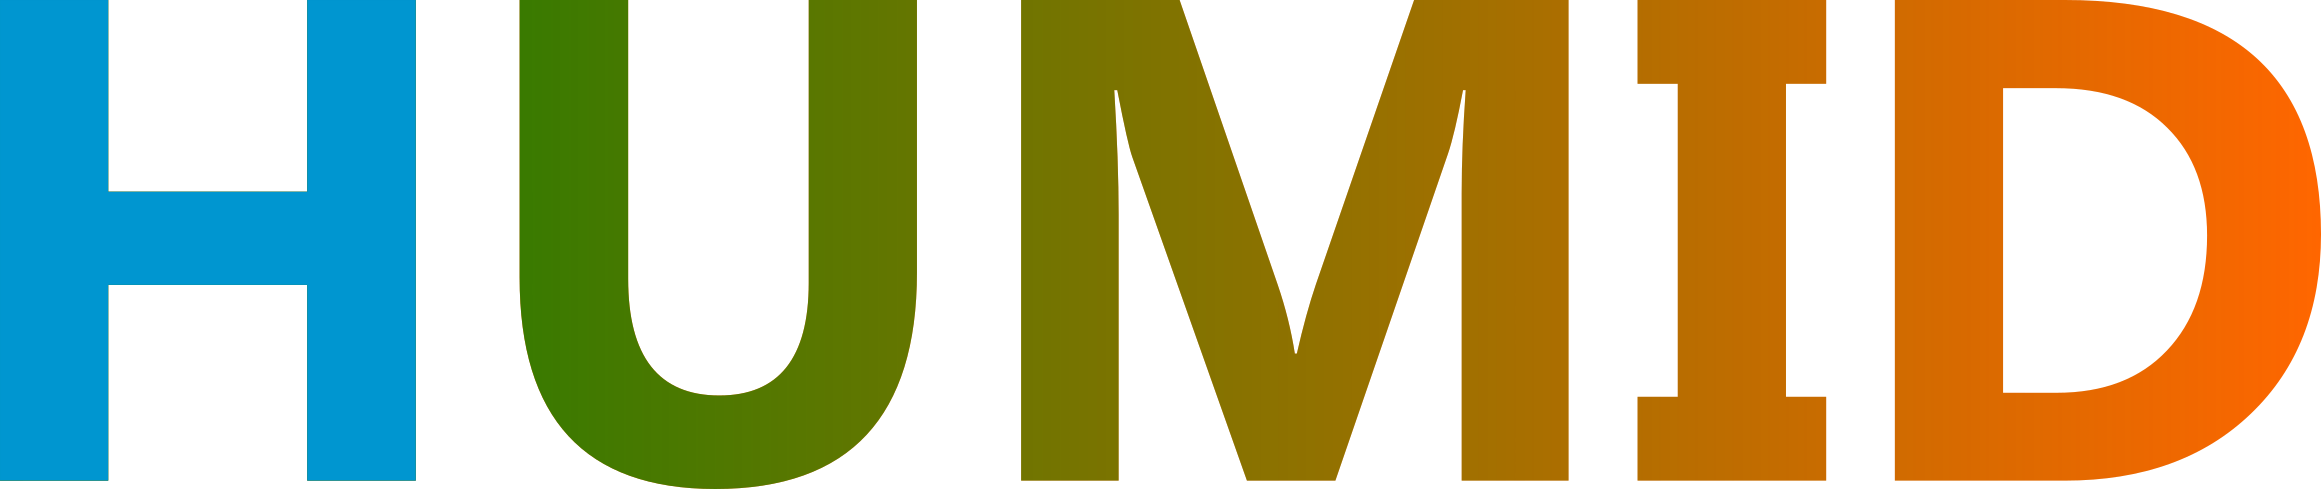 HUMID logo